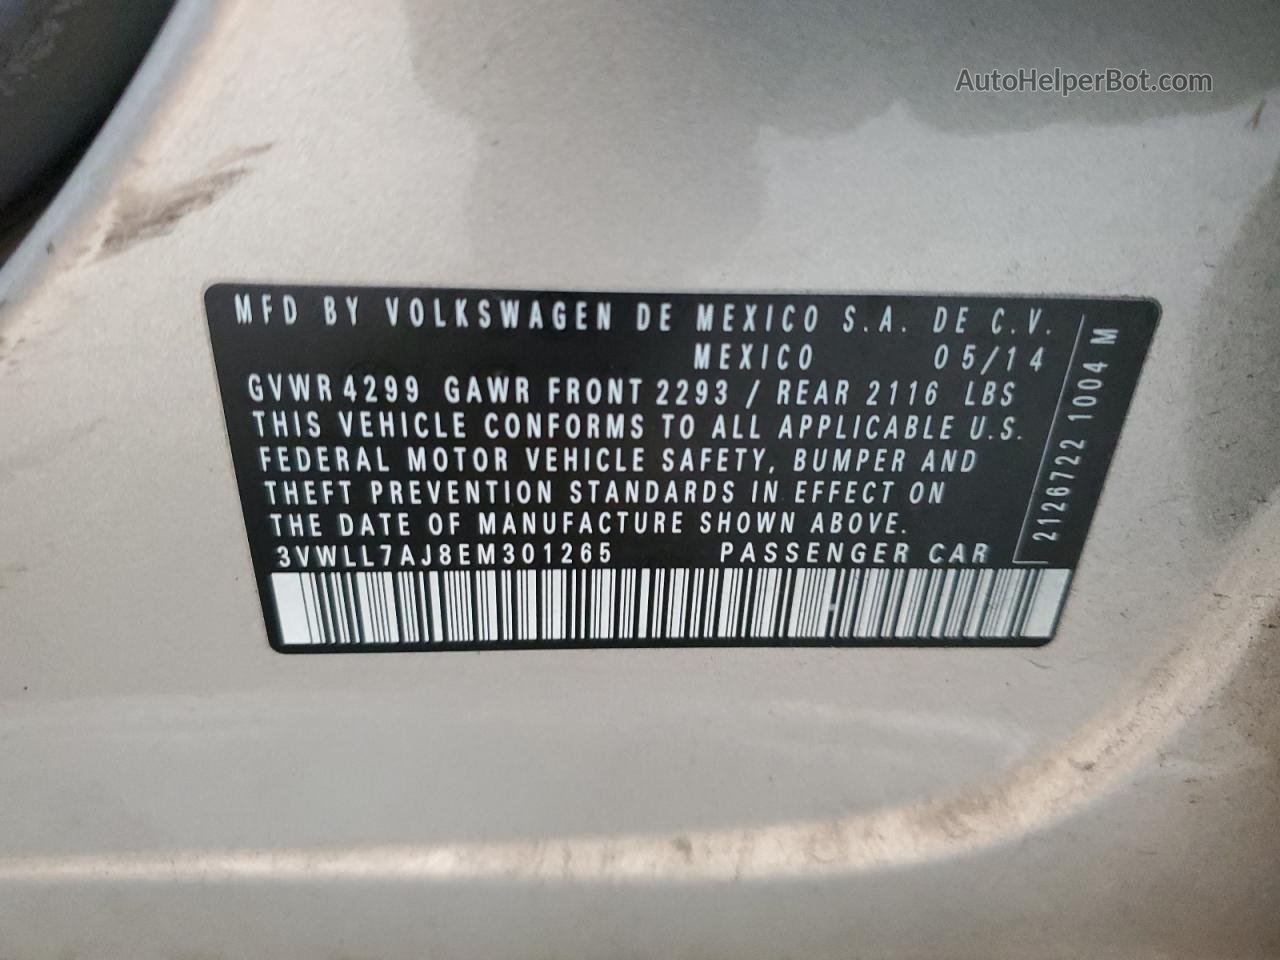 2014 Volkswagen Jetta Tdi Gold vin: 3VWLL7AJ8EM301265